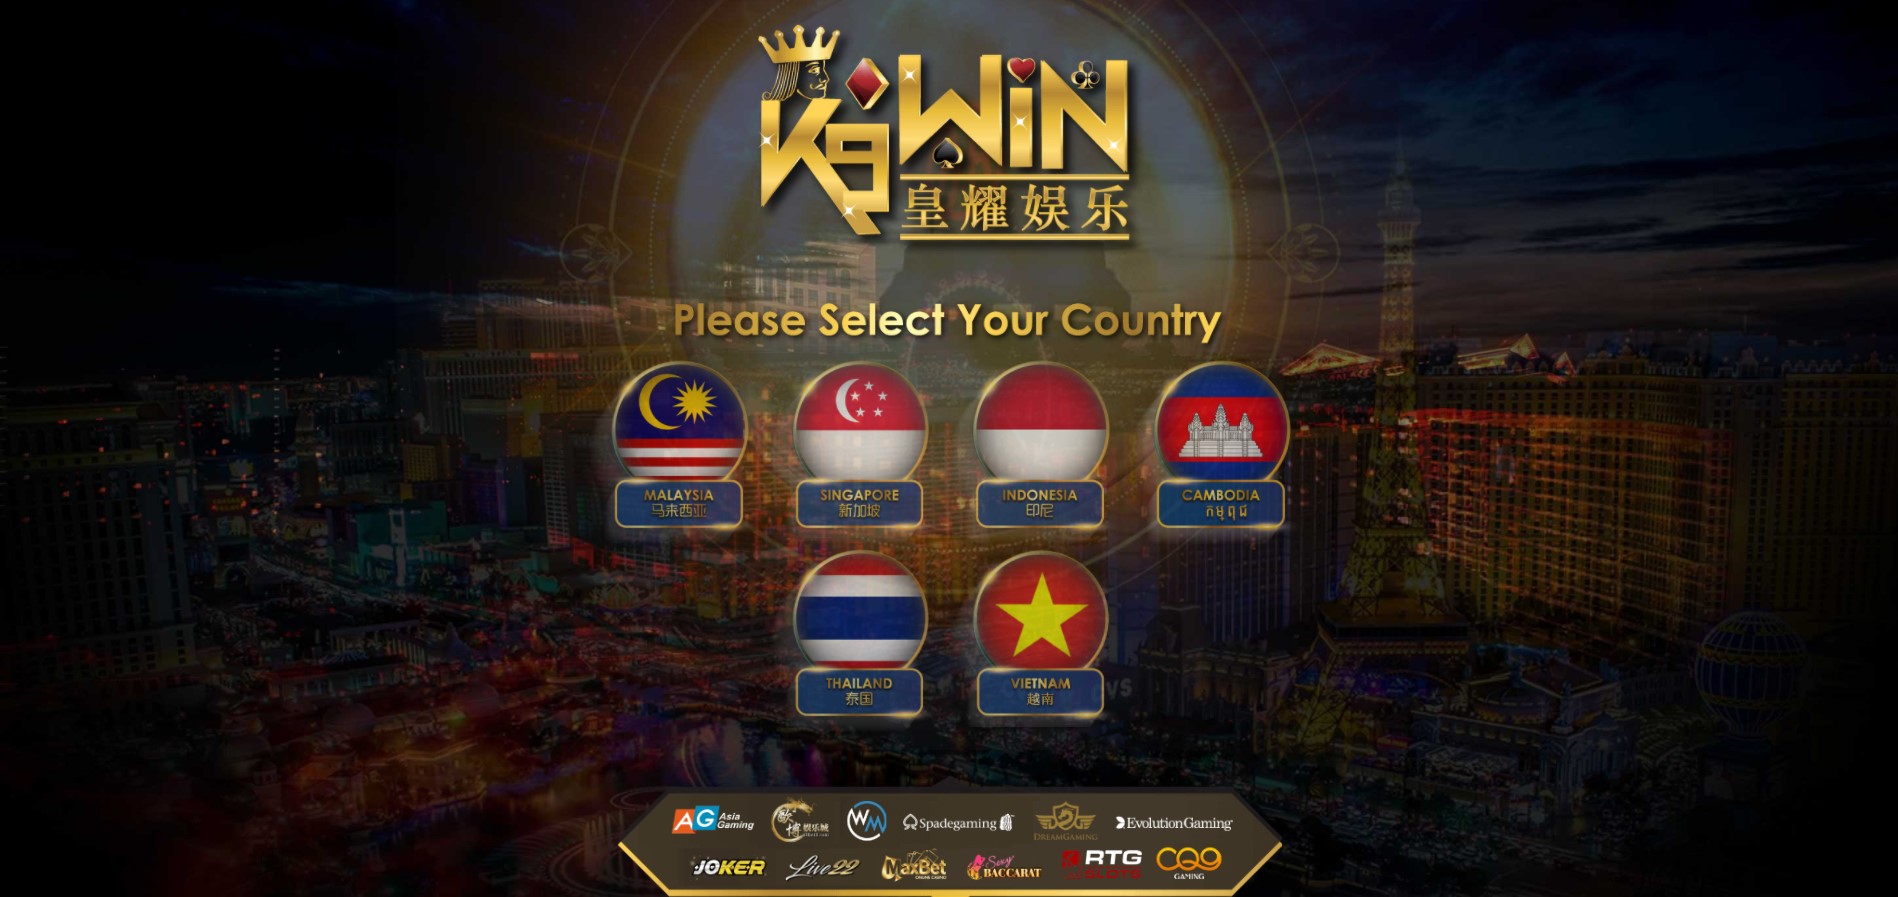 K9WIN Casino Singapore